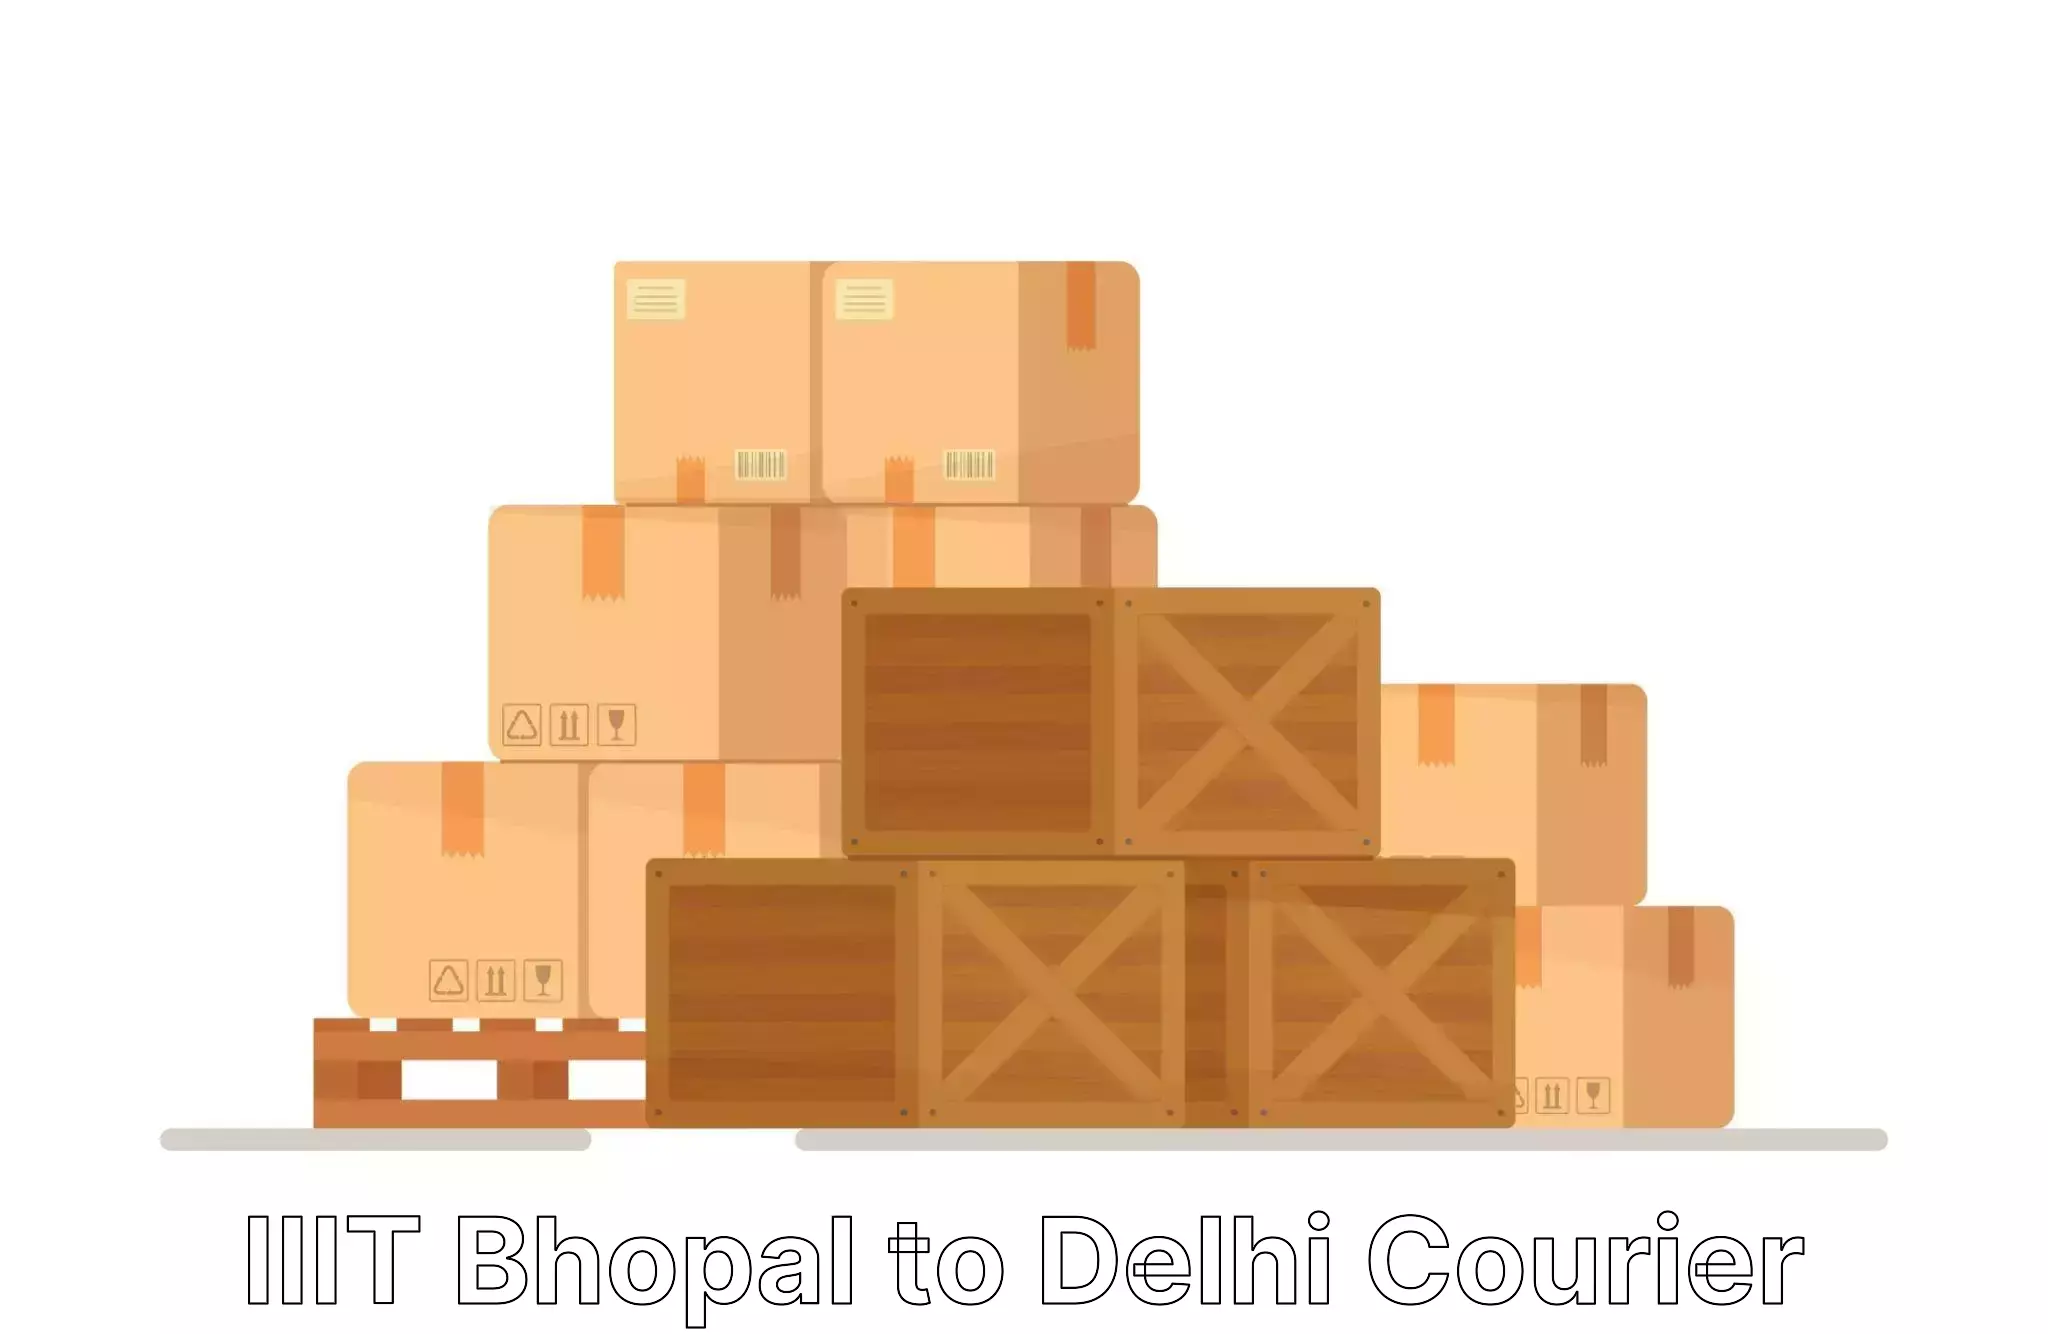 Home shifting experts IIIT Bhopal to Kalkaji